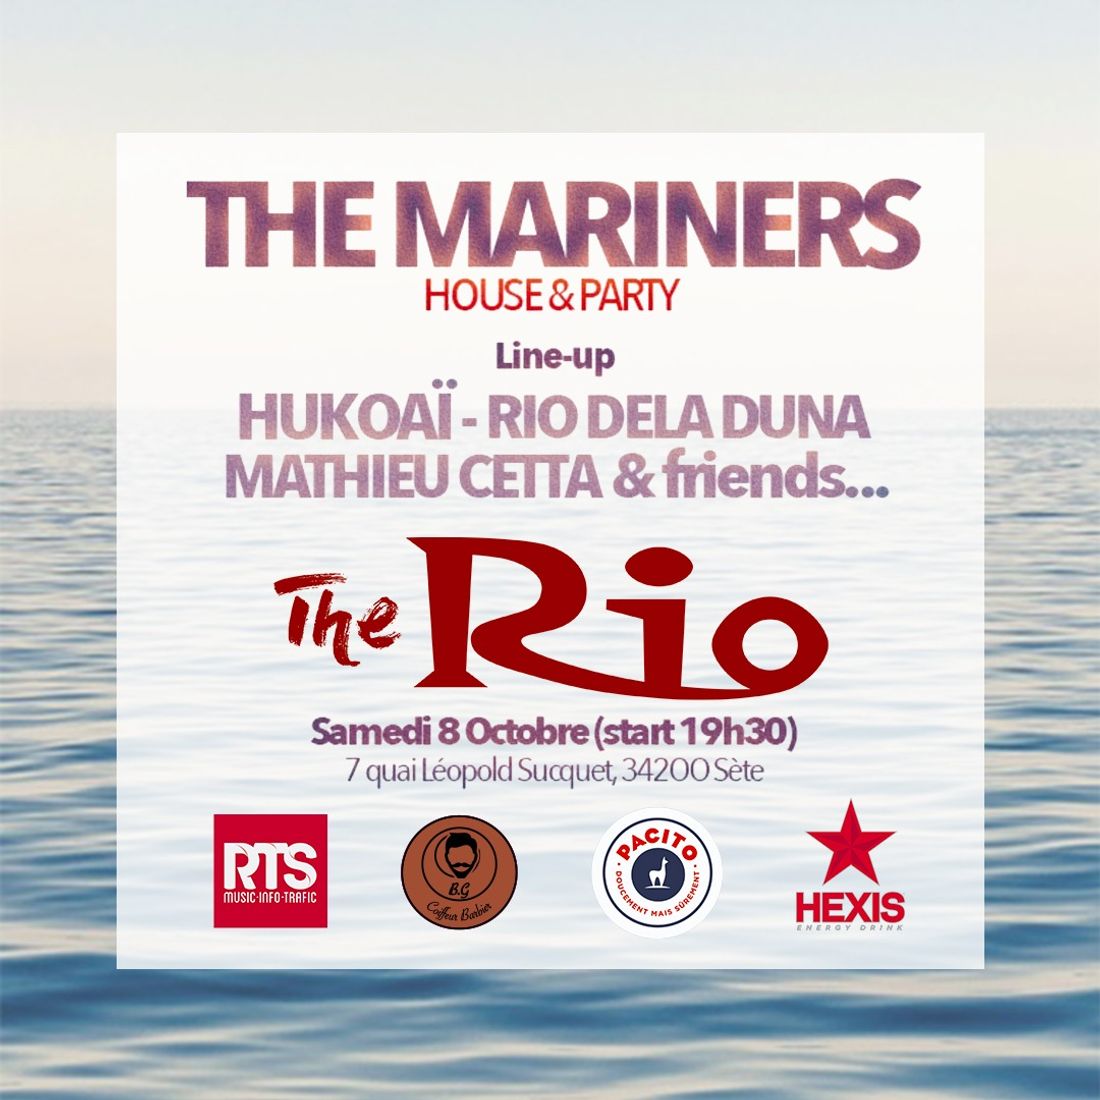 Sète : la soirée “The Mariners” revient pour une 3e édition